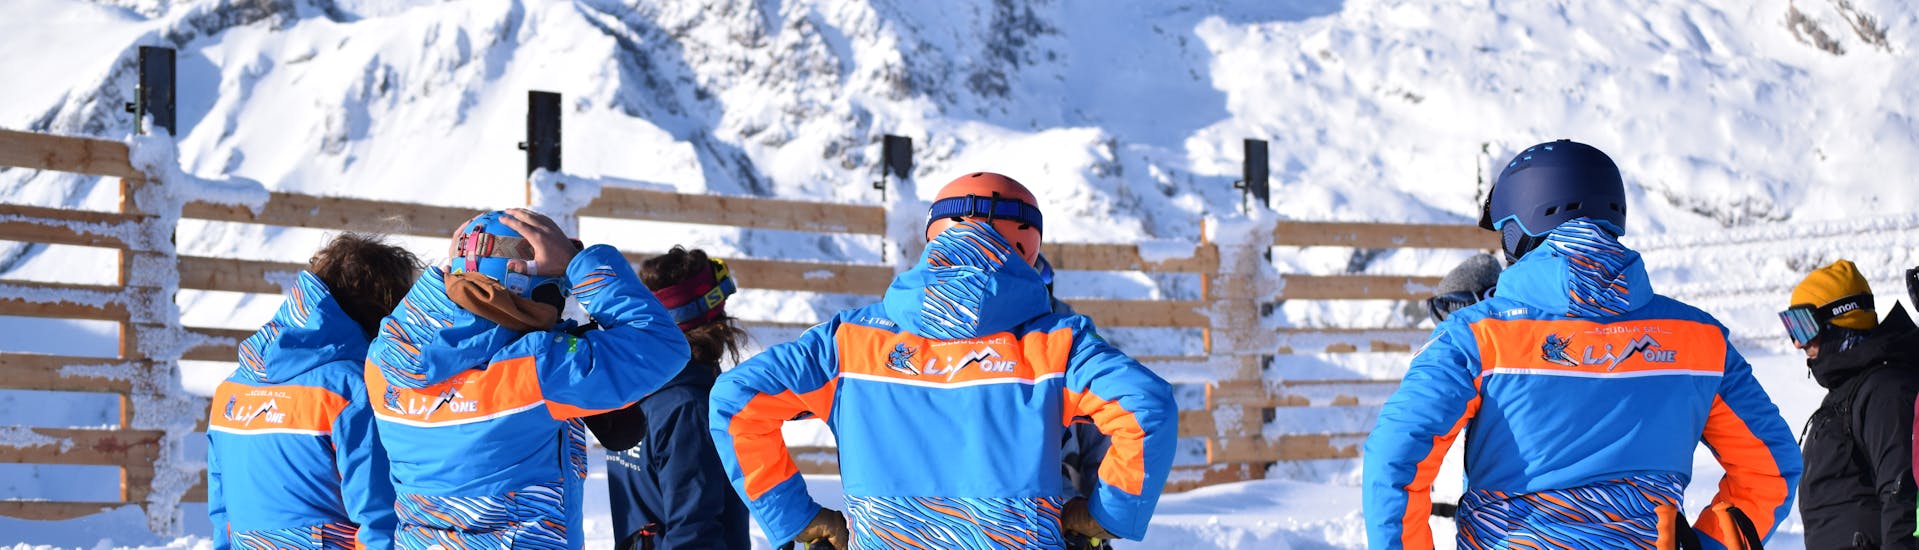 Moniteurs de ski se préparant avant un des cours de ski pour enfants pour expérimentés à Limone.